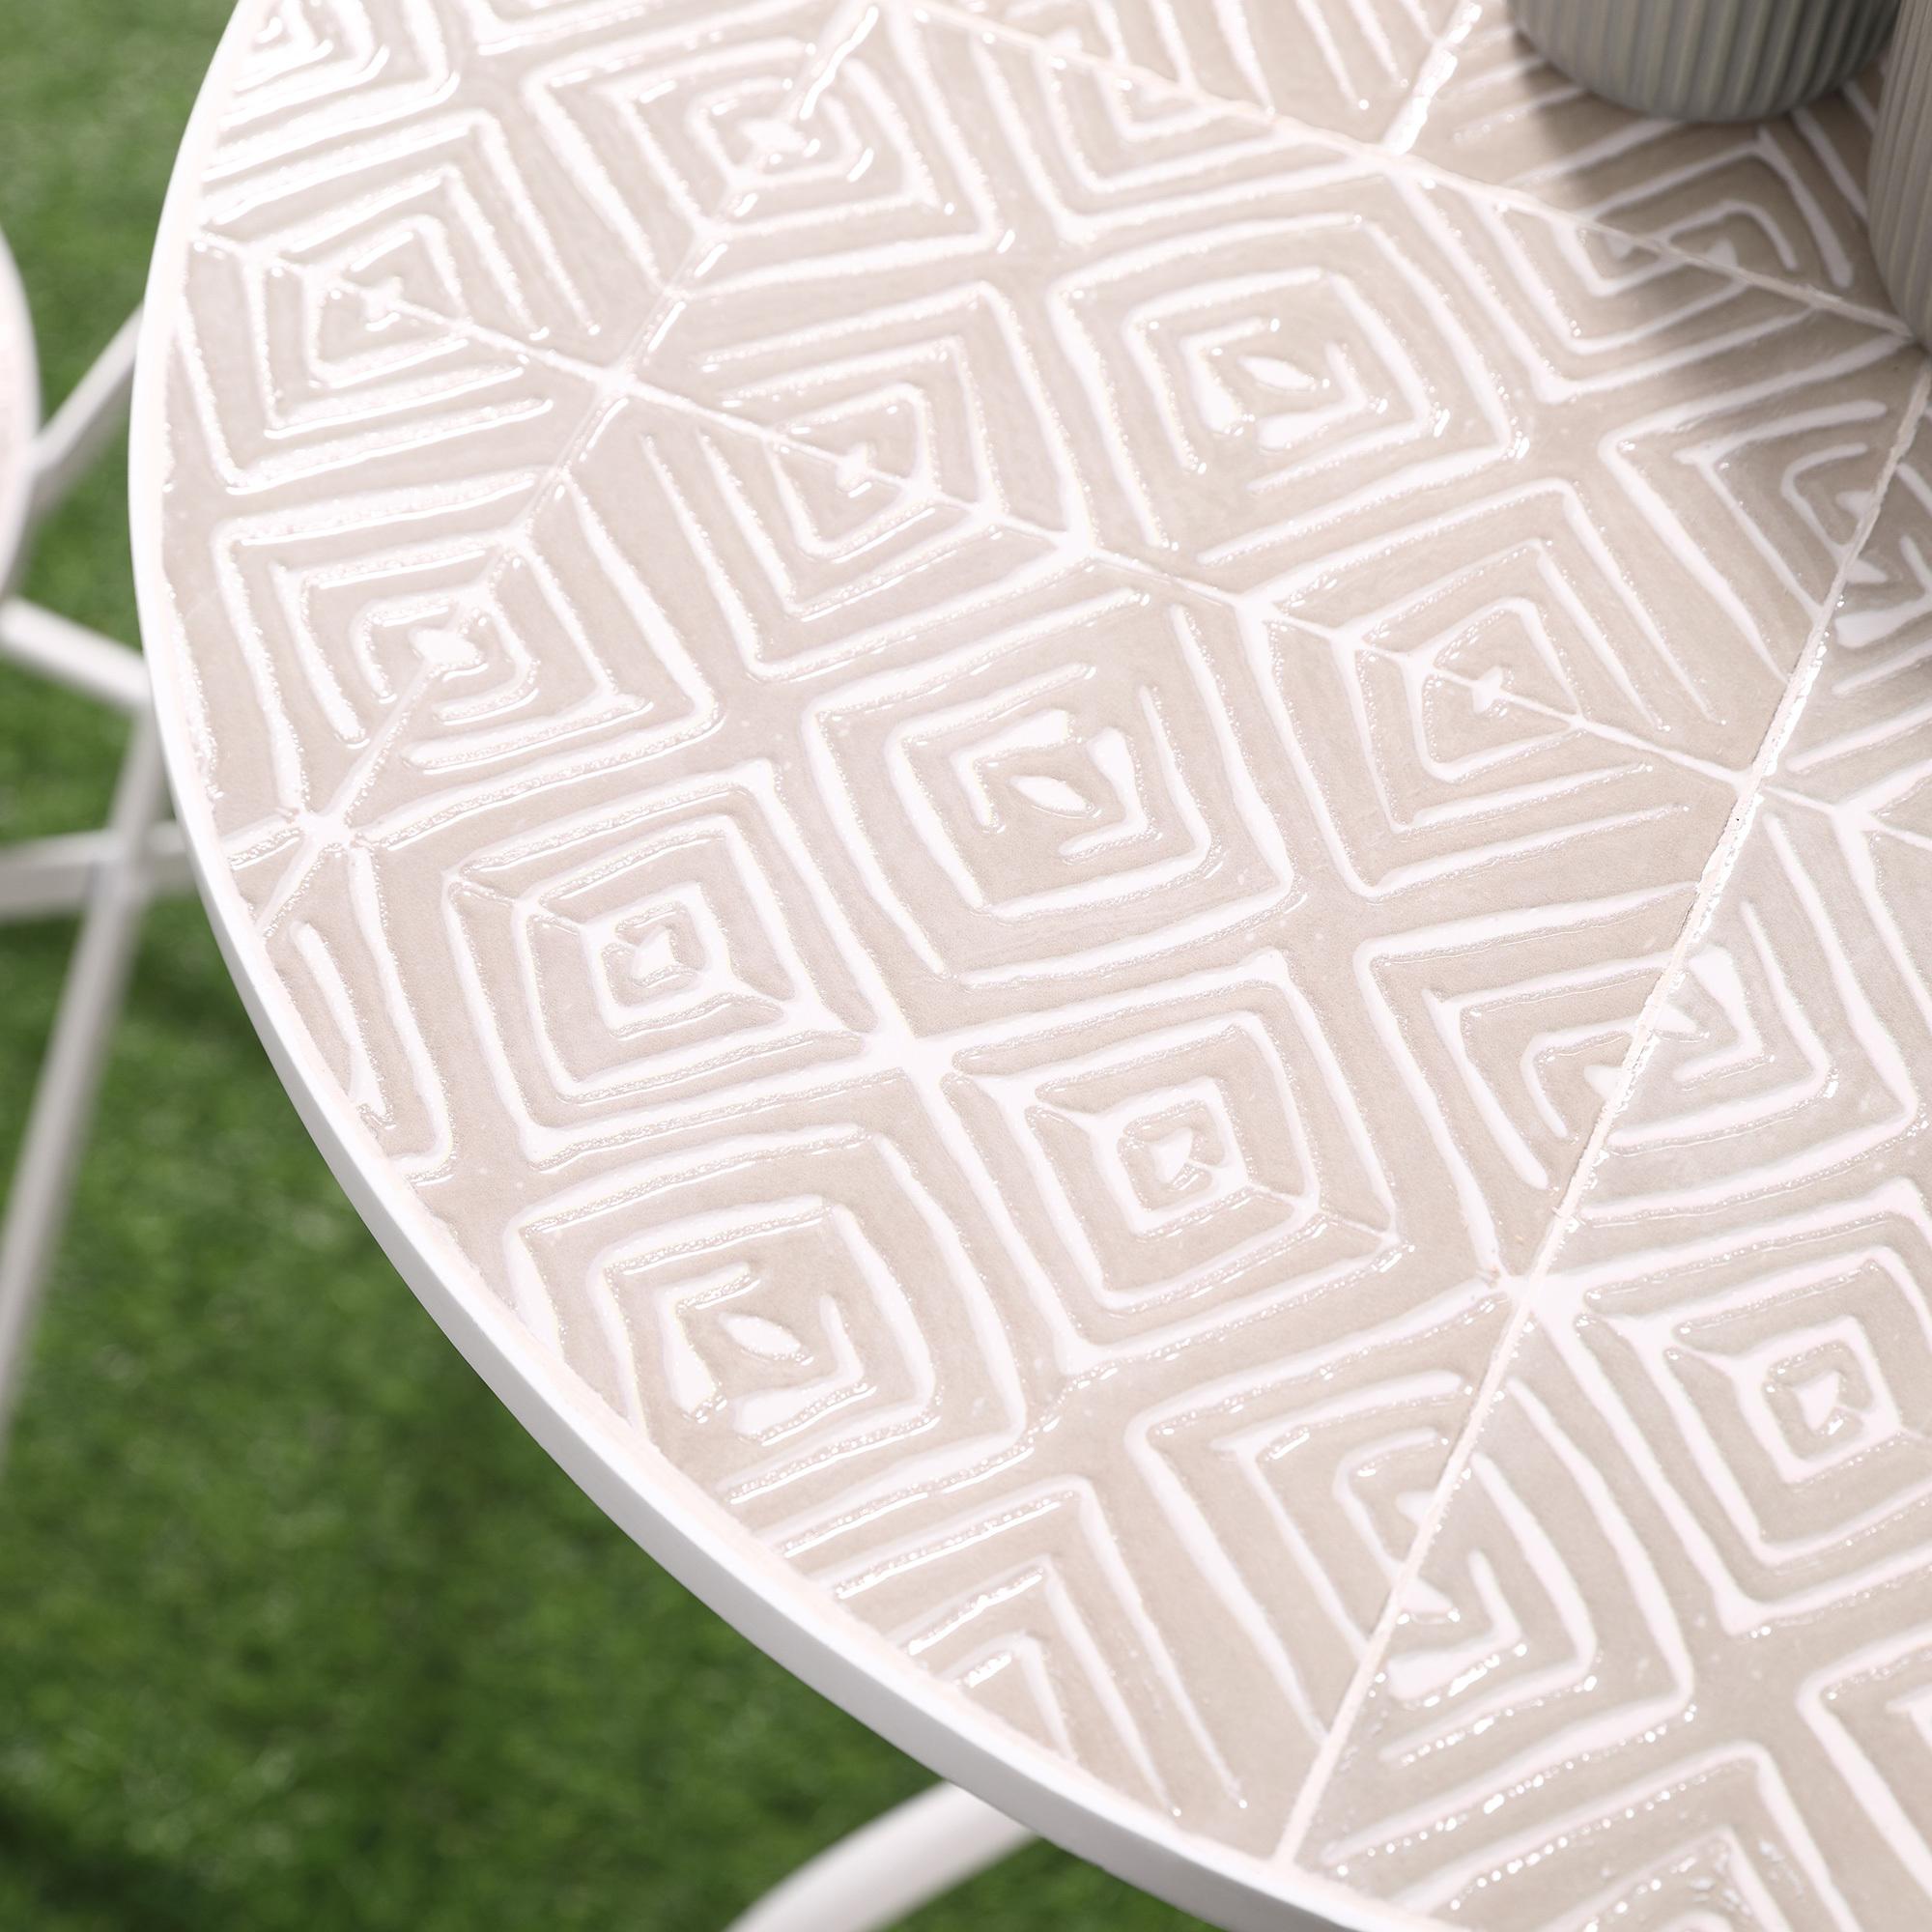 Ensemble de jardin bistro 3 pièces 2 chaises pliantes et table ronde - métal époxy, plateau mosaïque - blanc